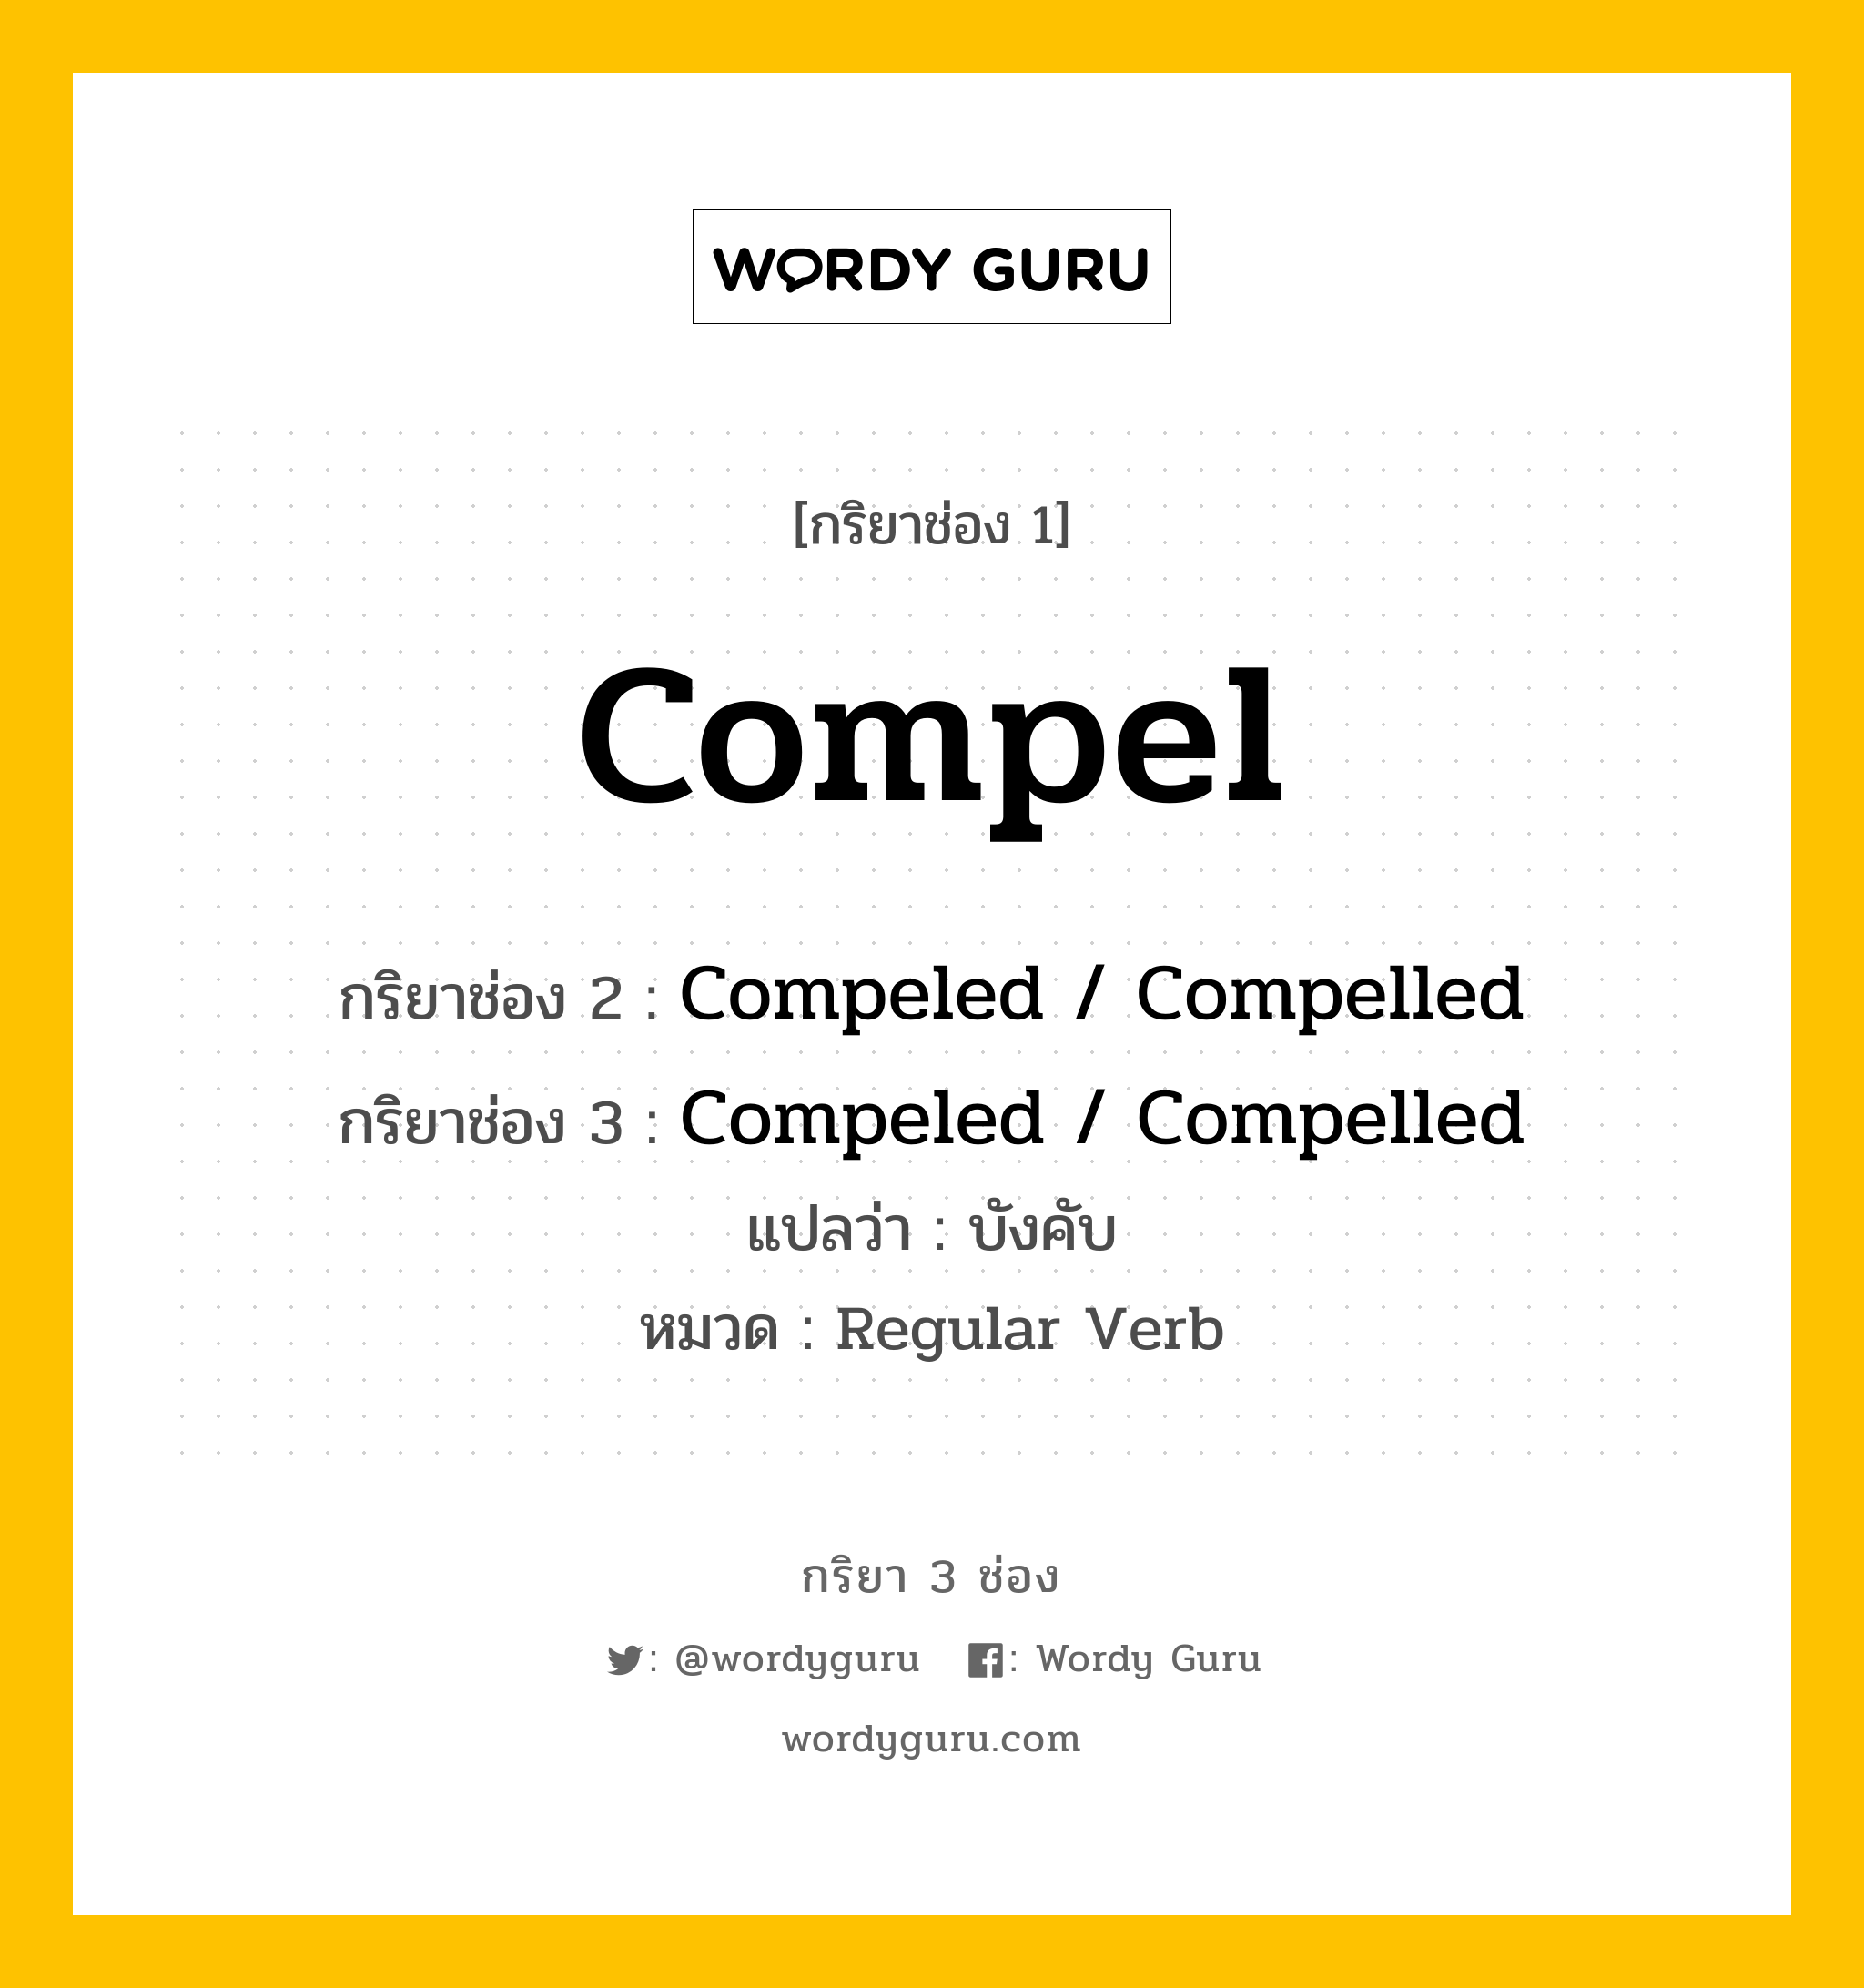 กริยา 3 ช่อง ของ Compel คืออะไร?, กริยาช่อง 1 Compel กริยาช่อง 2 Compeled / Compelled กริยาช่อง 3 Compeled / Compelled แปลว่า บังคับ หมวด Regular Verb หมวด Regular Verb